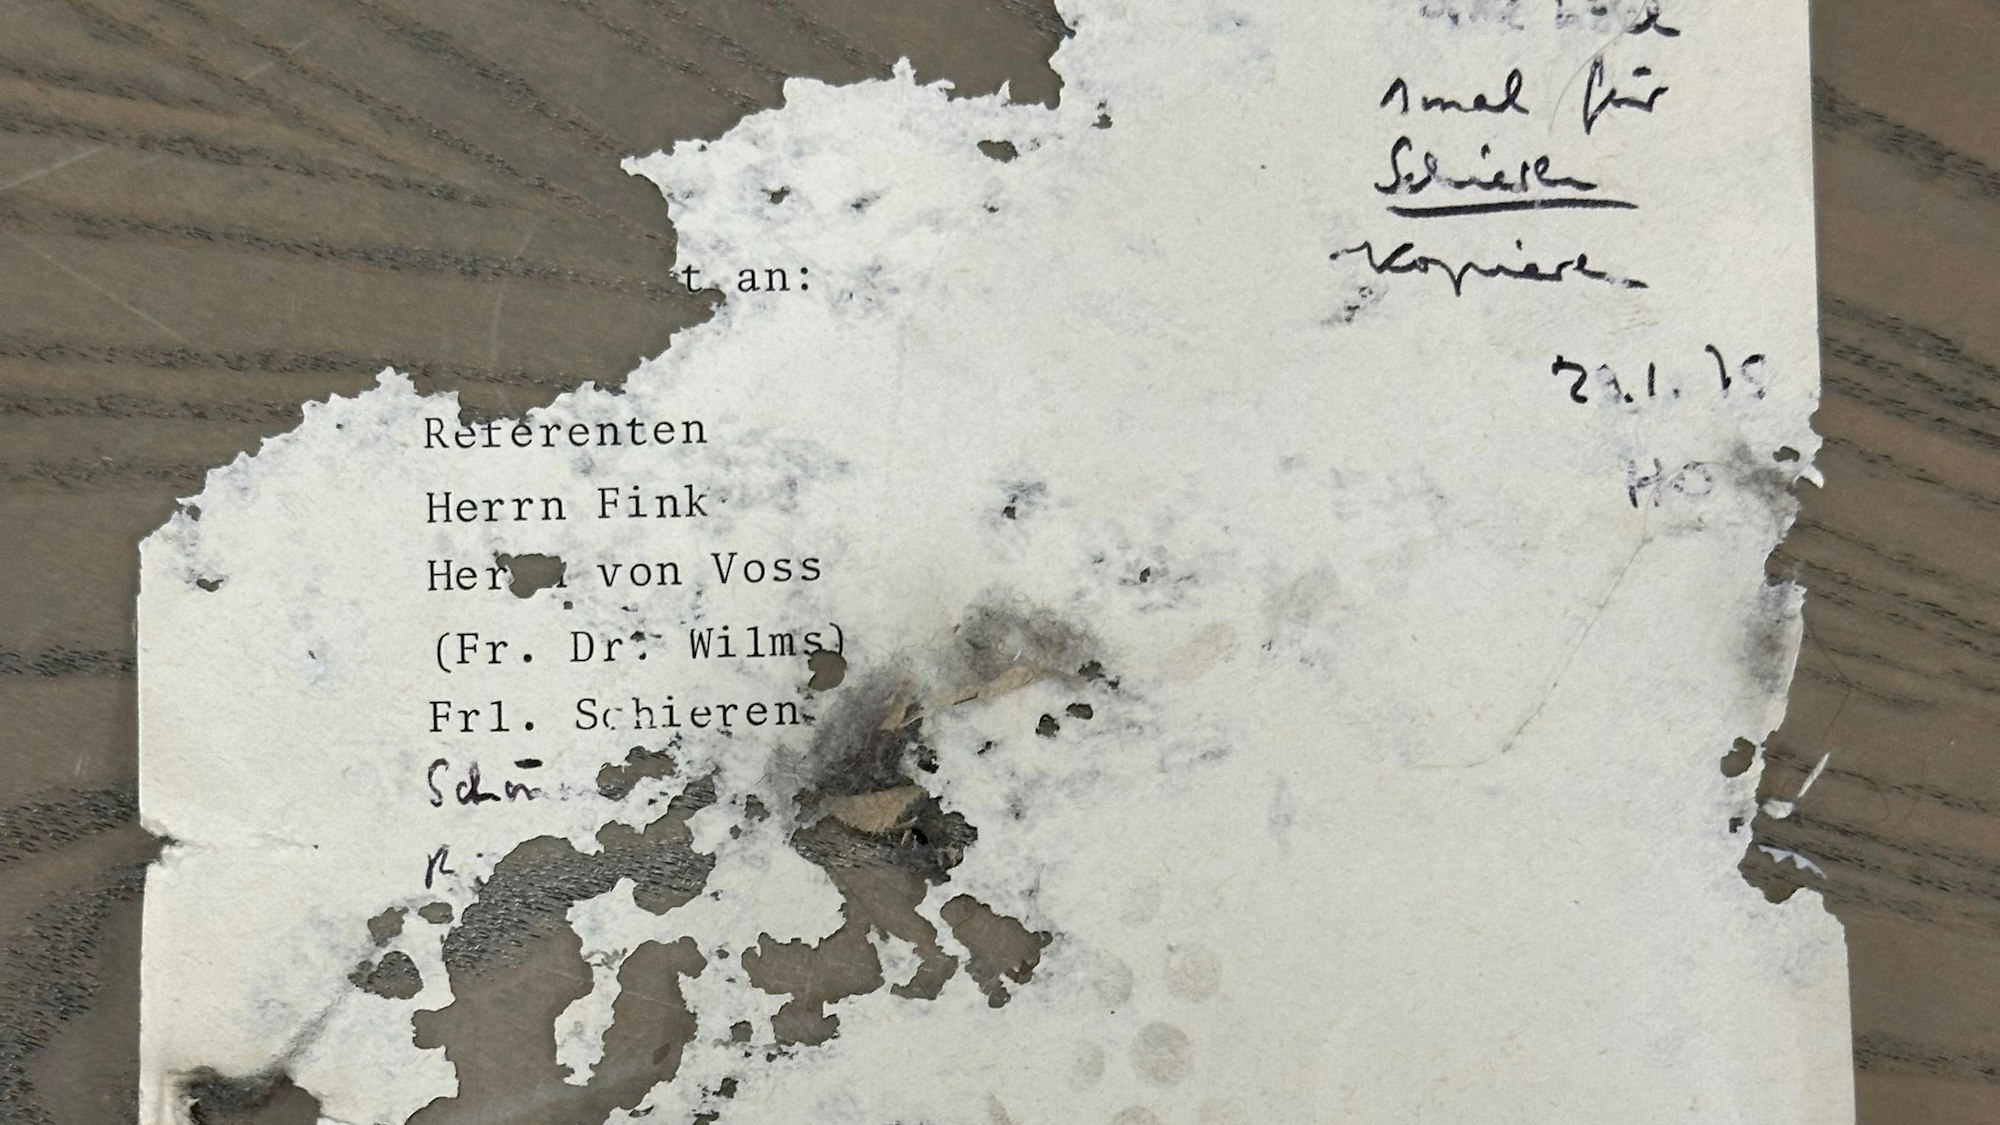 Das Konrad Adenauer Archiv der CDU in Sankt Augustin, von Mäusen zerfressenes Papier